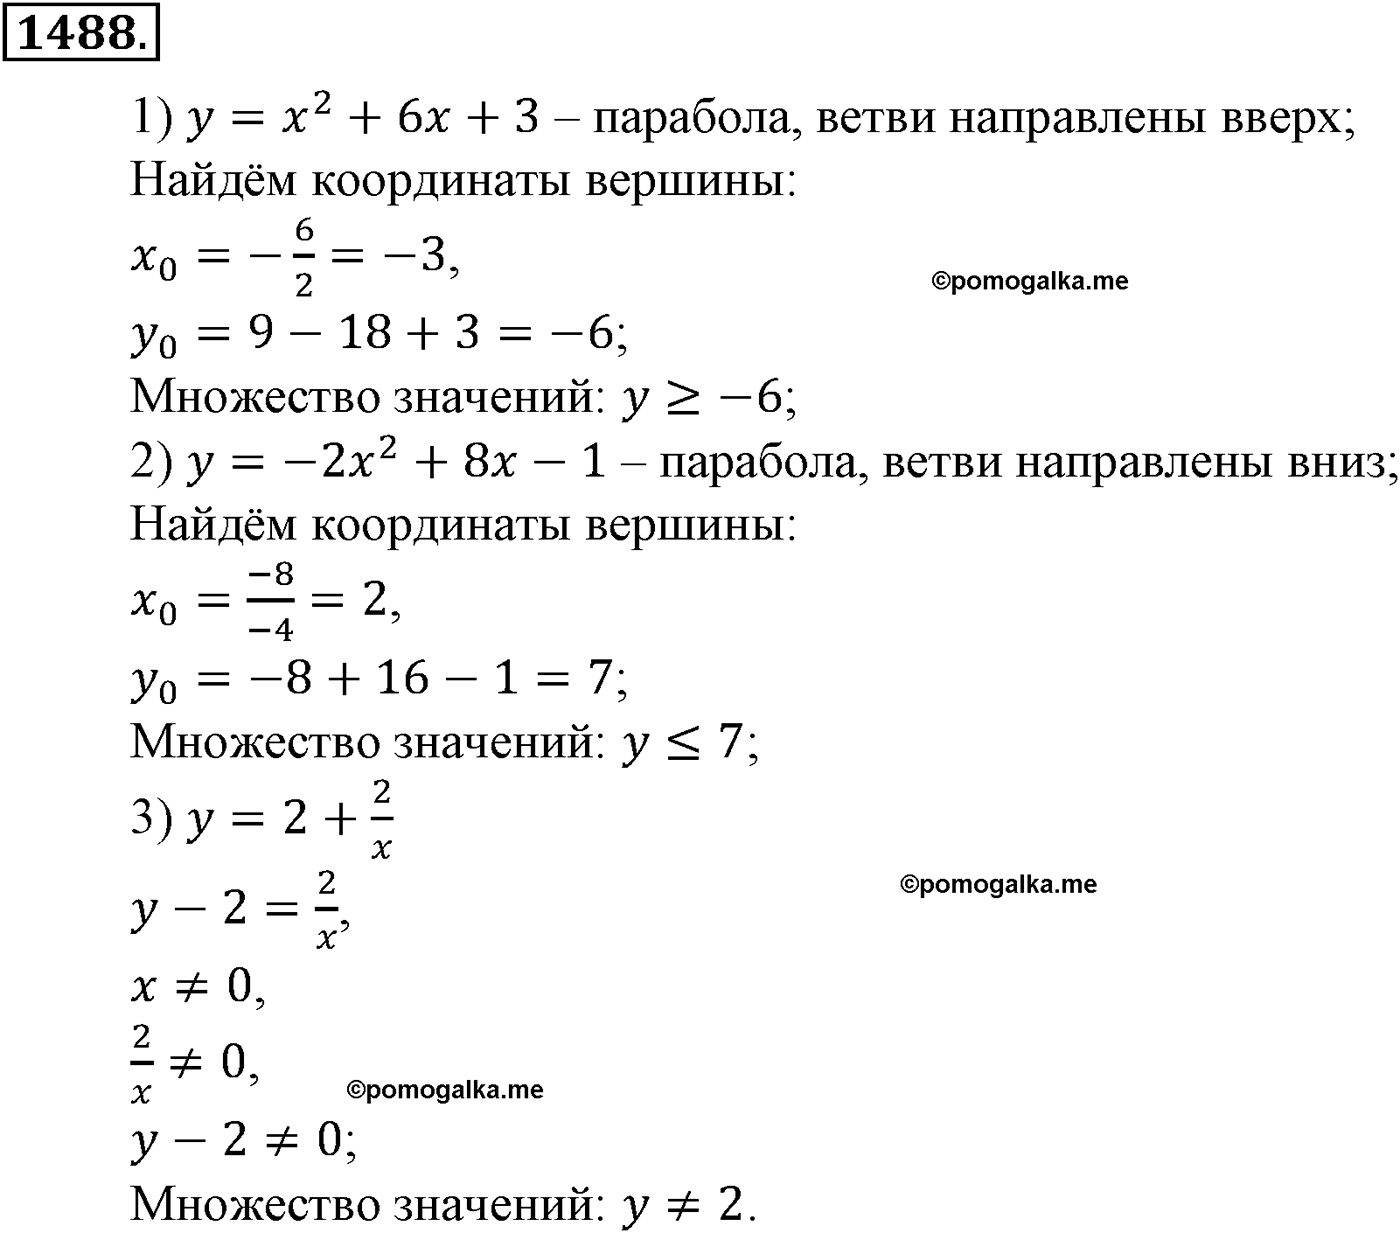 разбор задачи №1488 по алгебре за 10-11 класс из учебника Алимова, Колягина